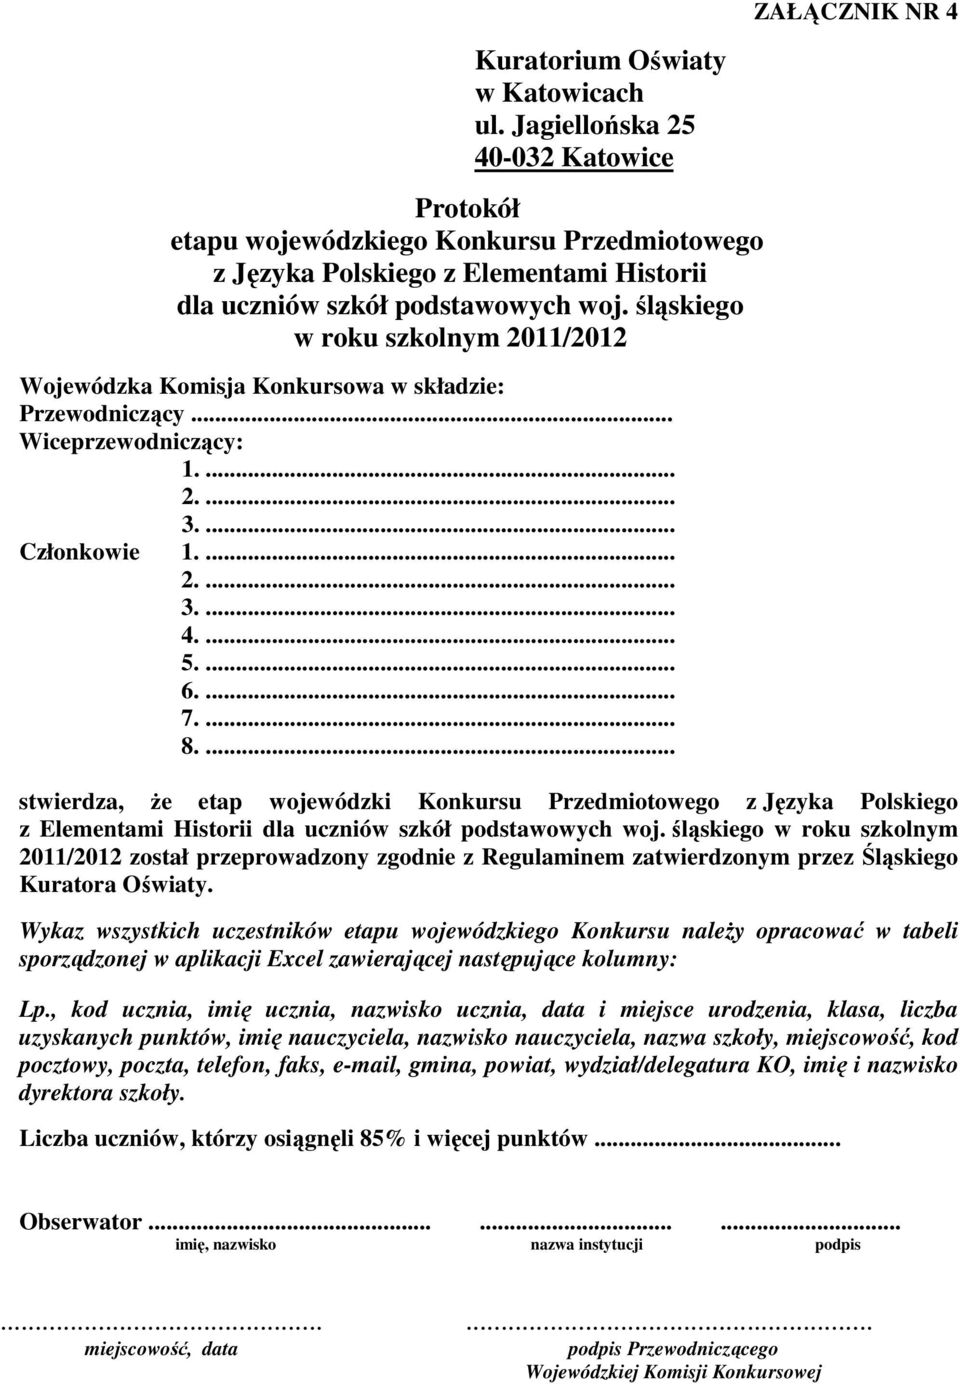 ... ZAŁĄCZNIK NR 4 stwierdza, że etap wojewódzki Konkursu Przedmiotowego z Języka Polskiego z Elementami Historii w roku szkolnym 2011/2012 został przeprowadzony zgodnie z Regulaminem zatwierdzonym